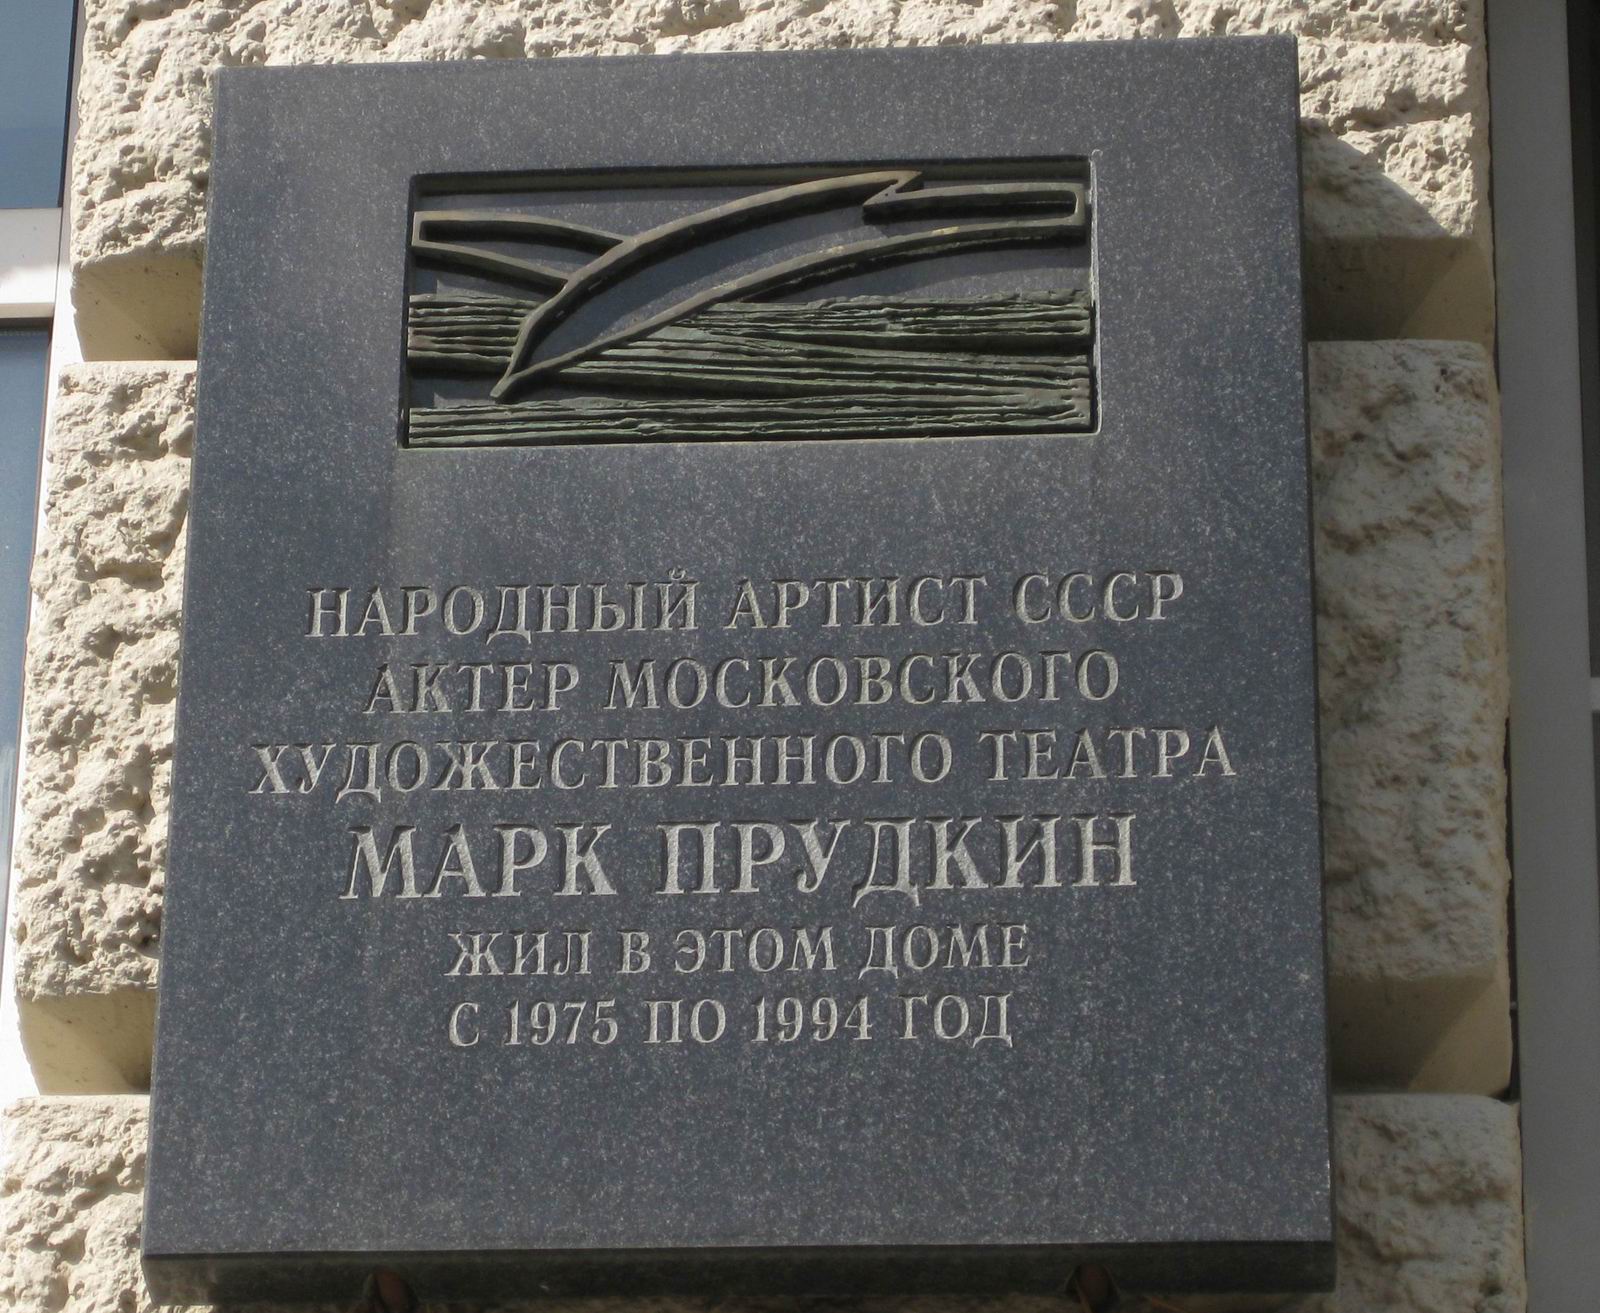 Мемориальная доска Прудкину М.И. (1898-1994), арх. А.К.Тихонов, в Глинищевском переулке, дом 5/7, открыта 27.3.2008.